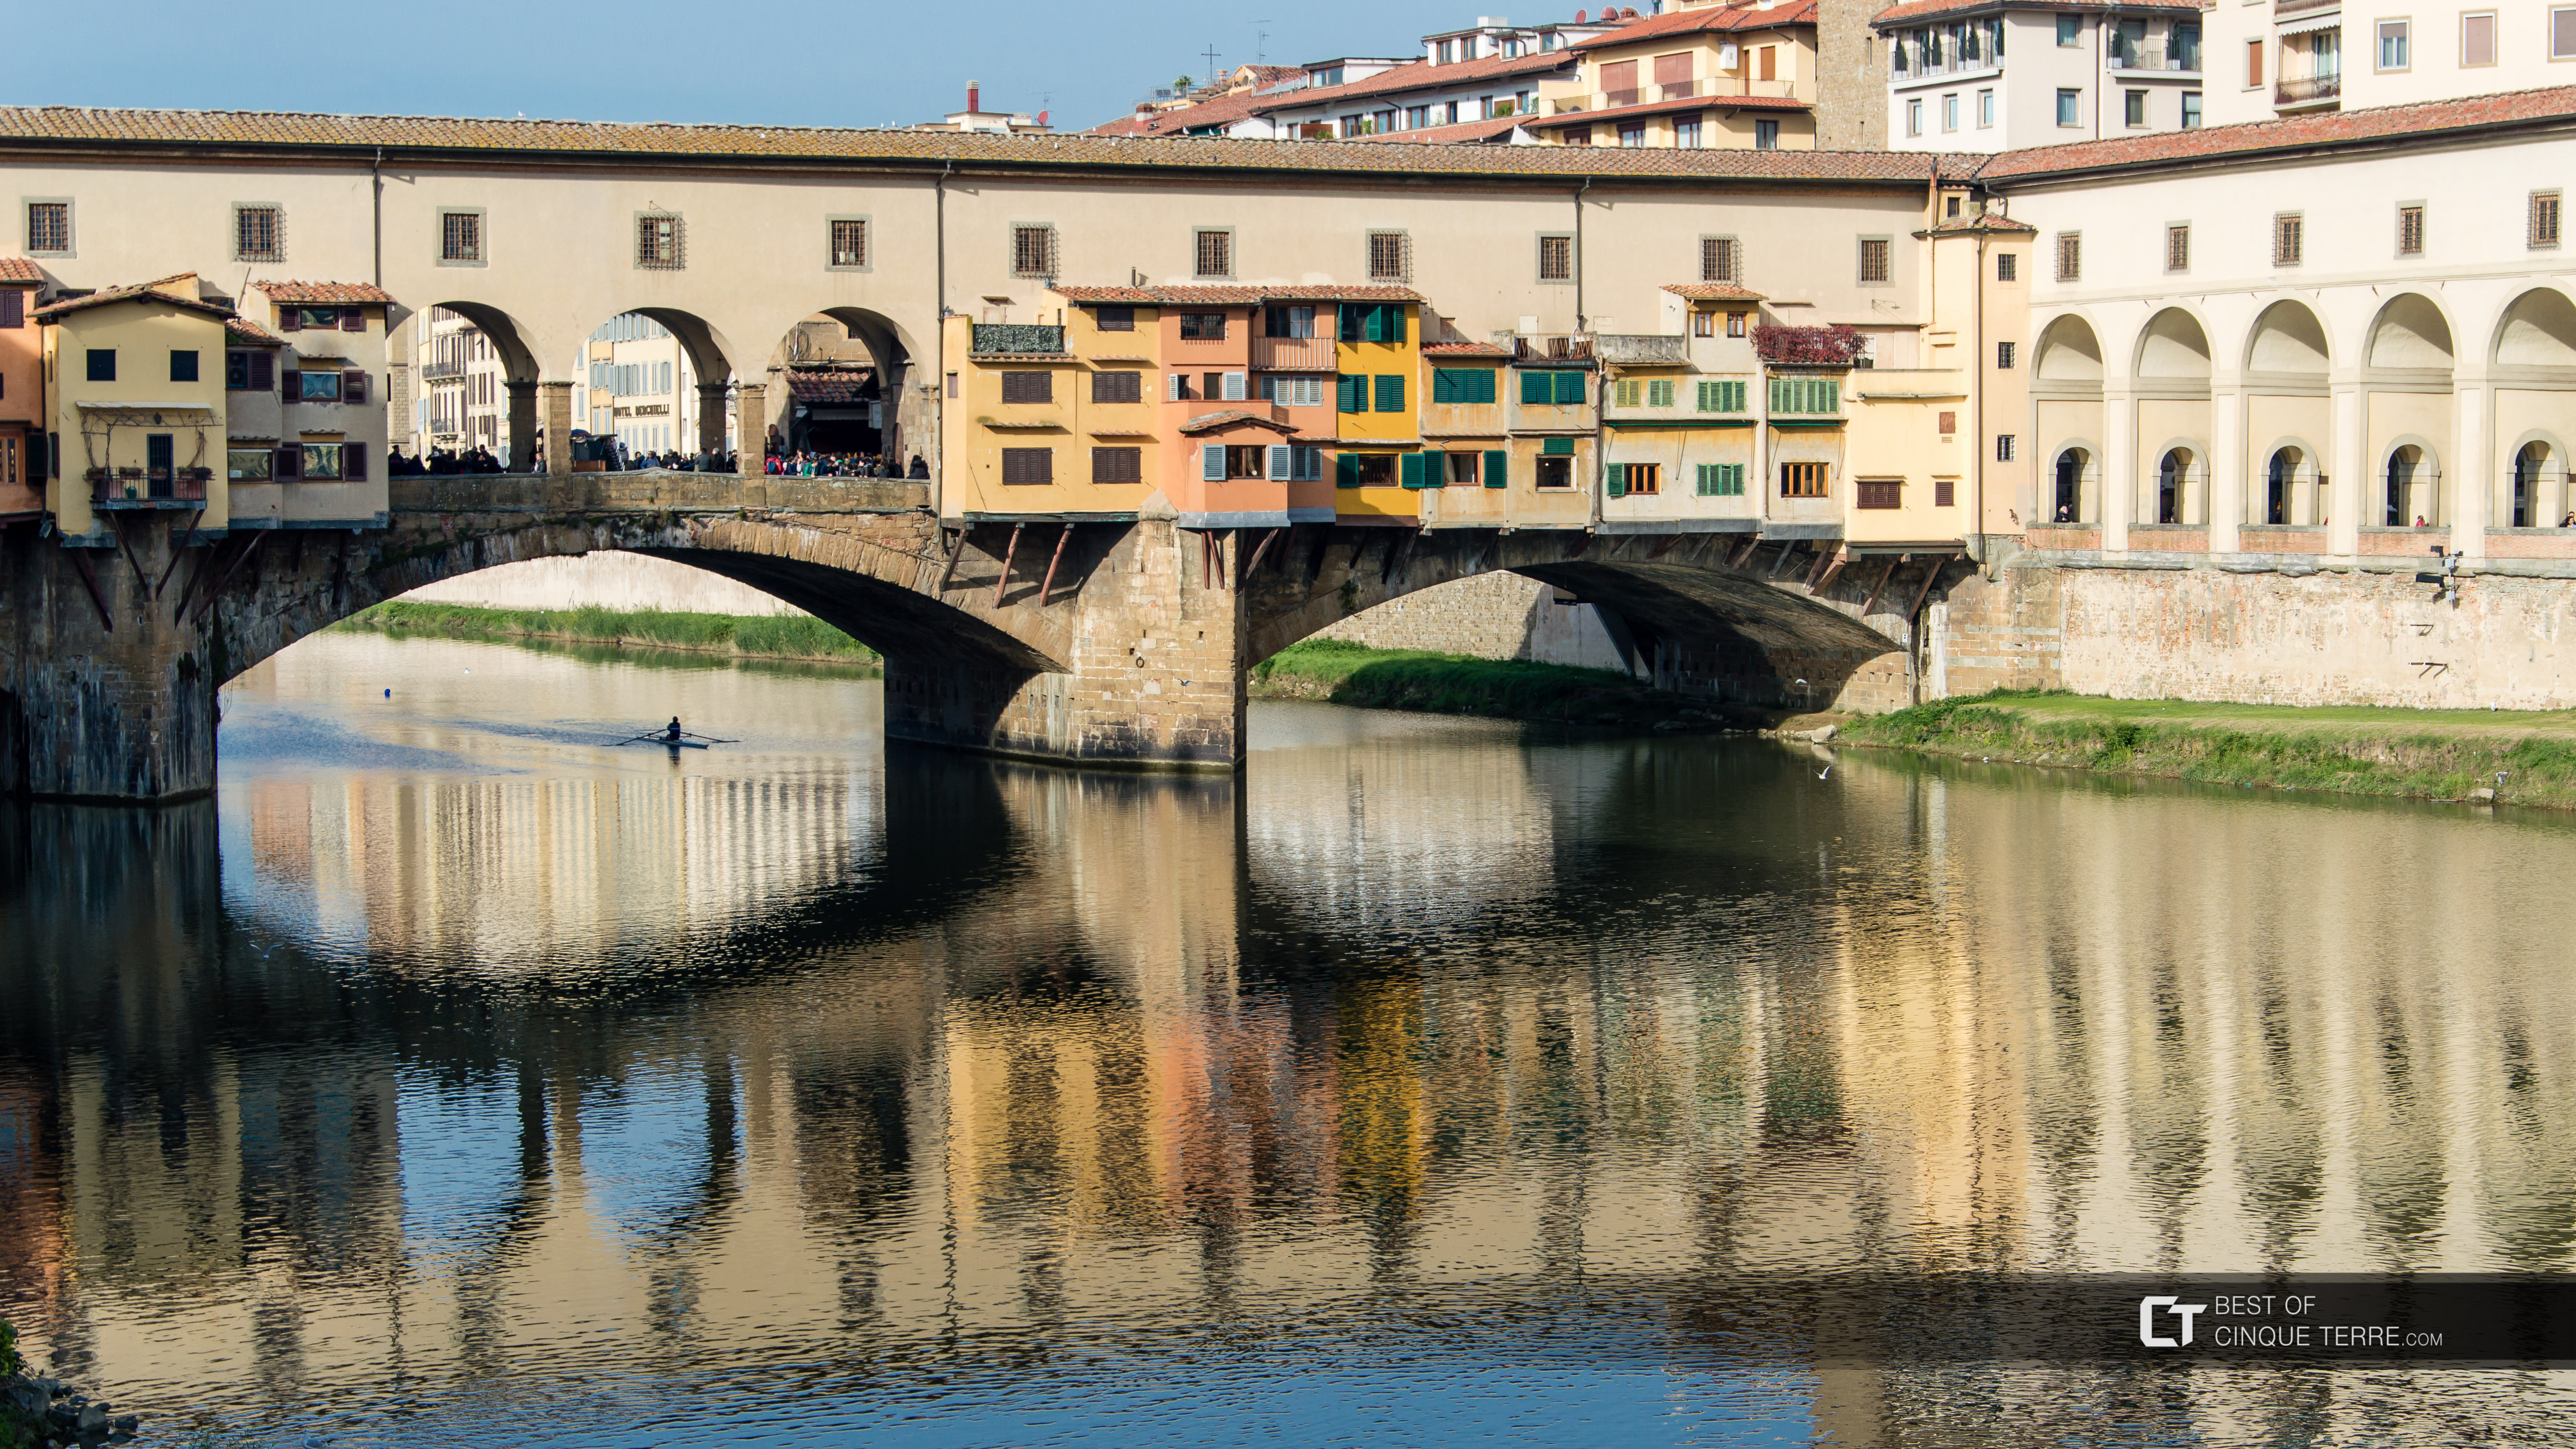 Le Ponte Vecchio, Florence, Italie